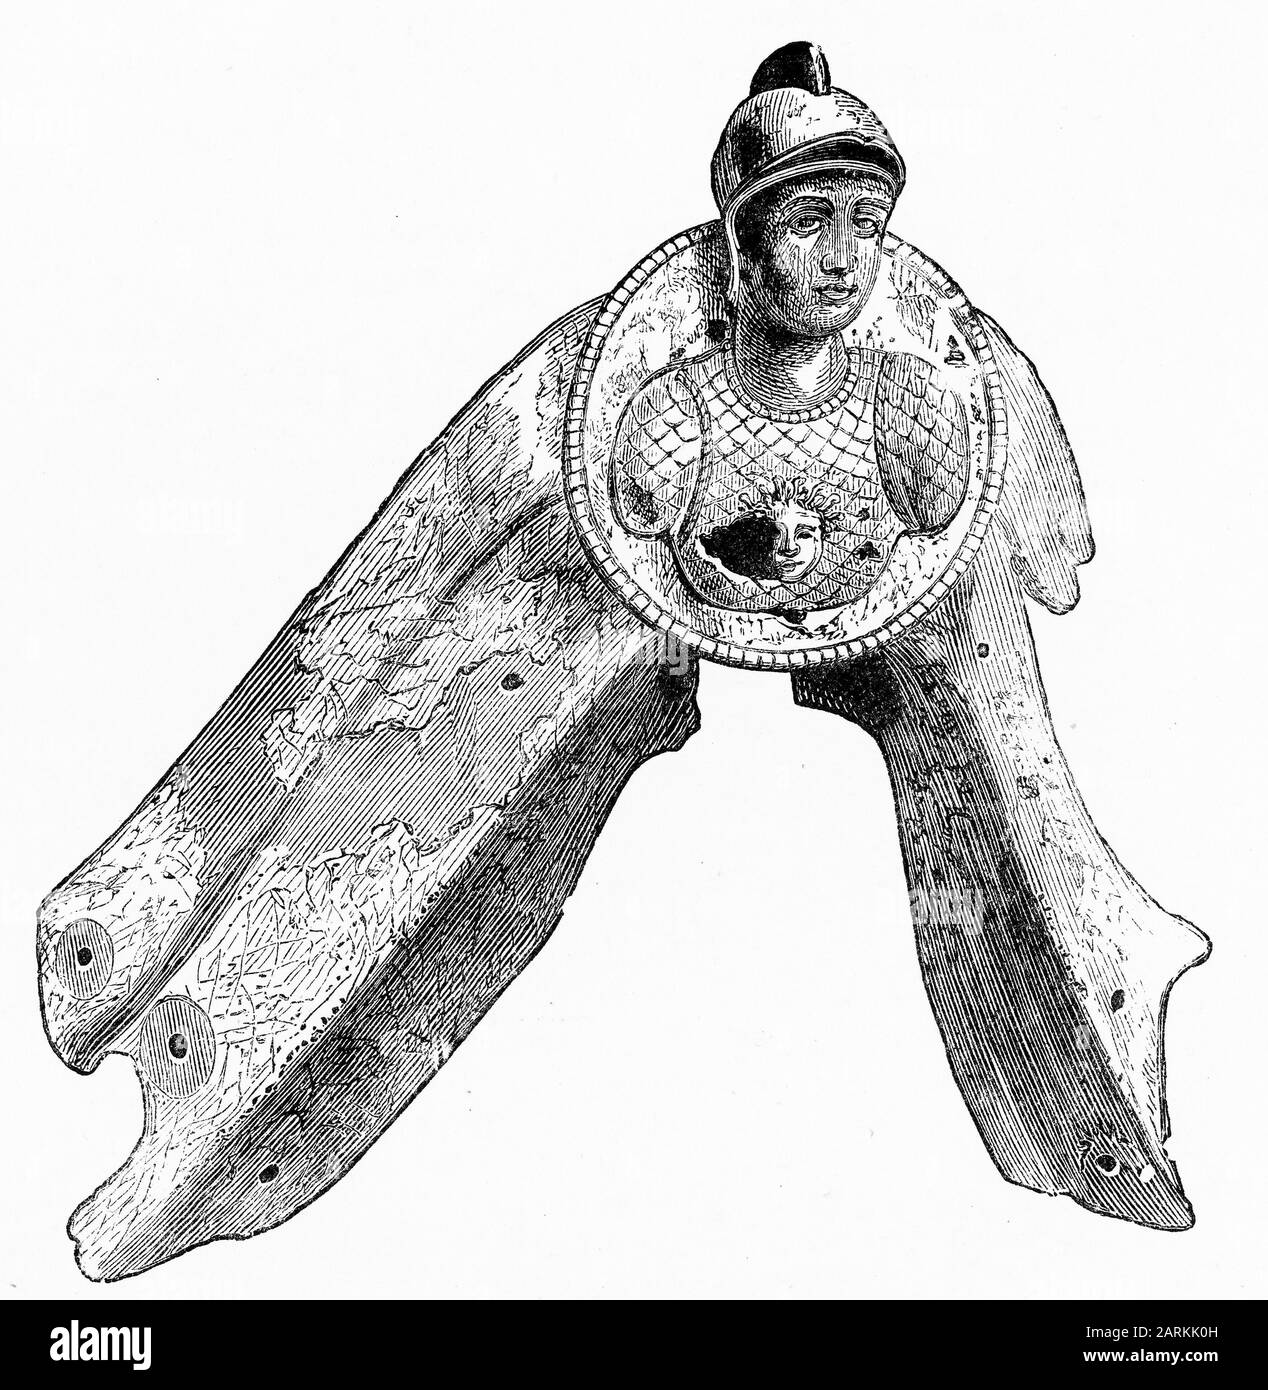 Gravure de la figuretête de la galère romaine Minerva, qui a combattu dans la bataille d'Actium, combattit entre la flotte d'Octavian et les forces combinées de Mark Antony et de la reine Cleopatra d'Egypte le 2 septembre 31 BC dans la mer Ionienne près du promontoire d'Actium en Grèce. Banque D'Images